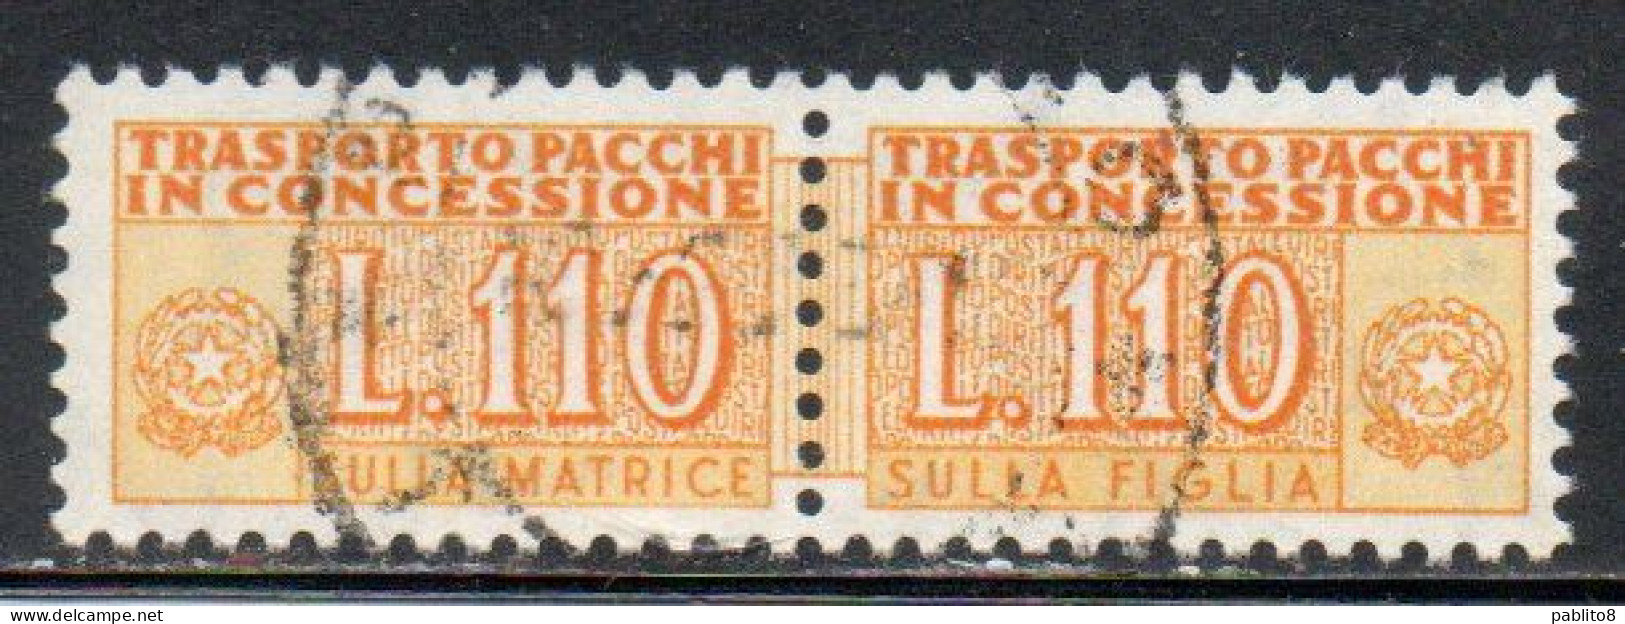 ITALIA REPUBBLICA ITALY REPUBLIC 1955 1981 PACCHI IN CONCESSIONE PARCEL POST STELLE STARS 1960 LIRE 110 USATO USED OBLIT - Colis-concession